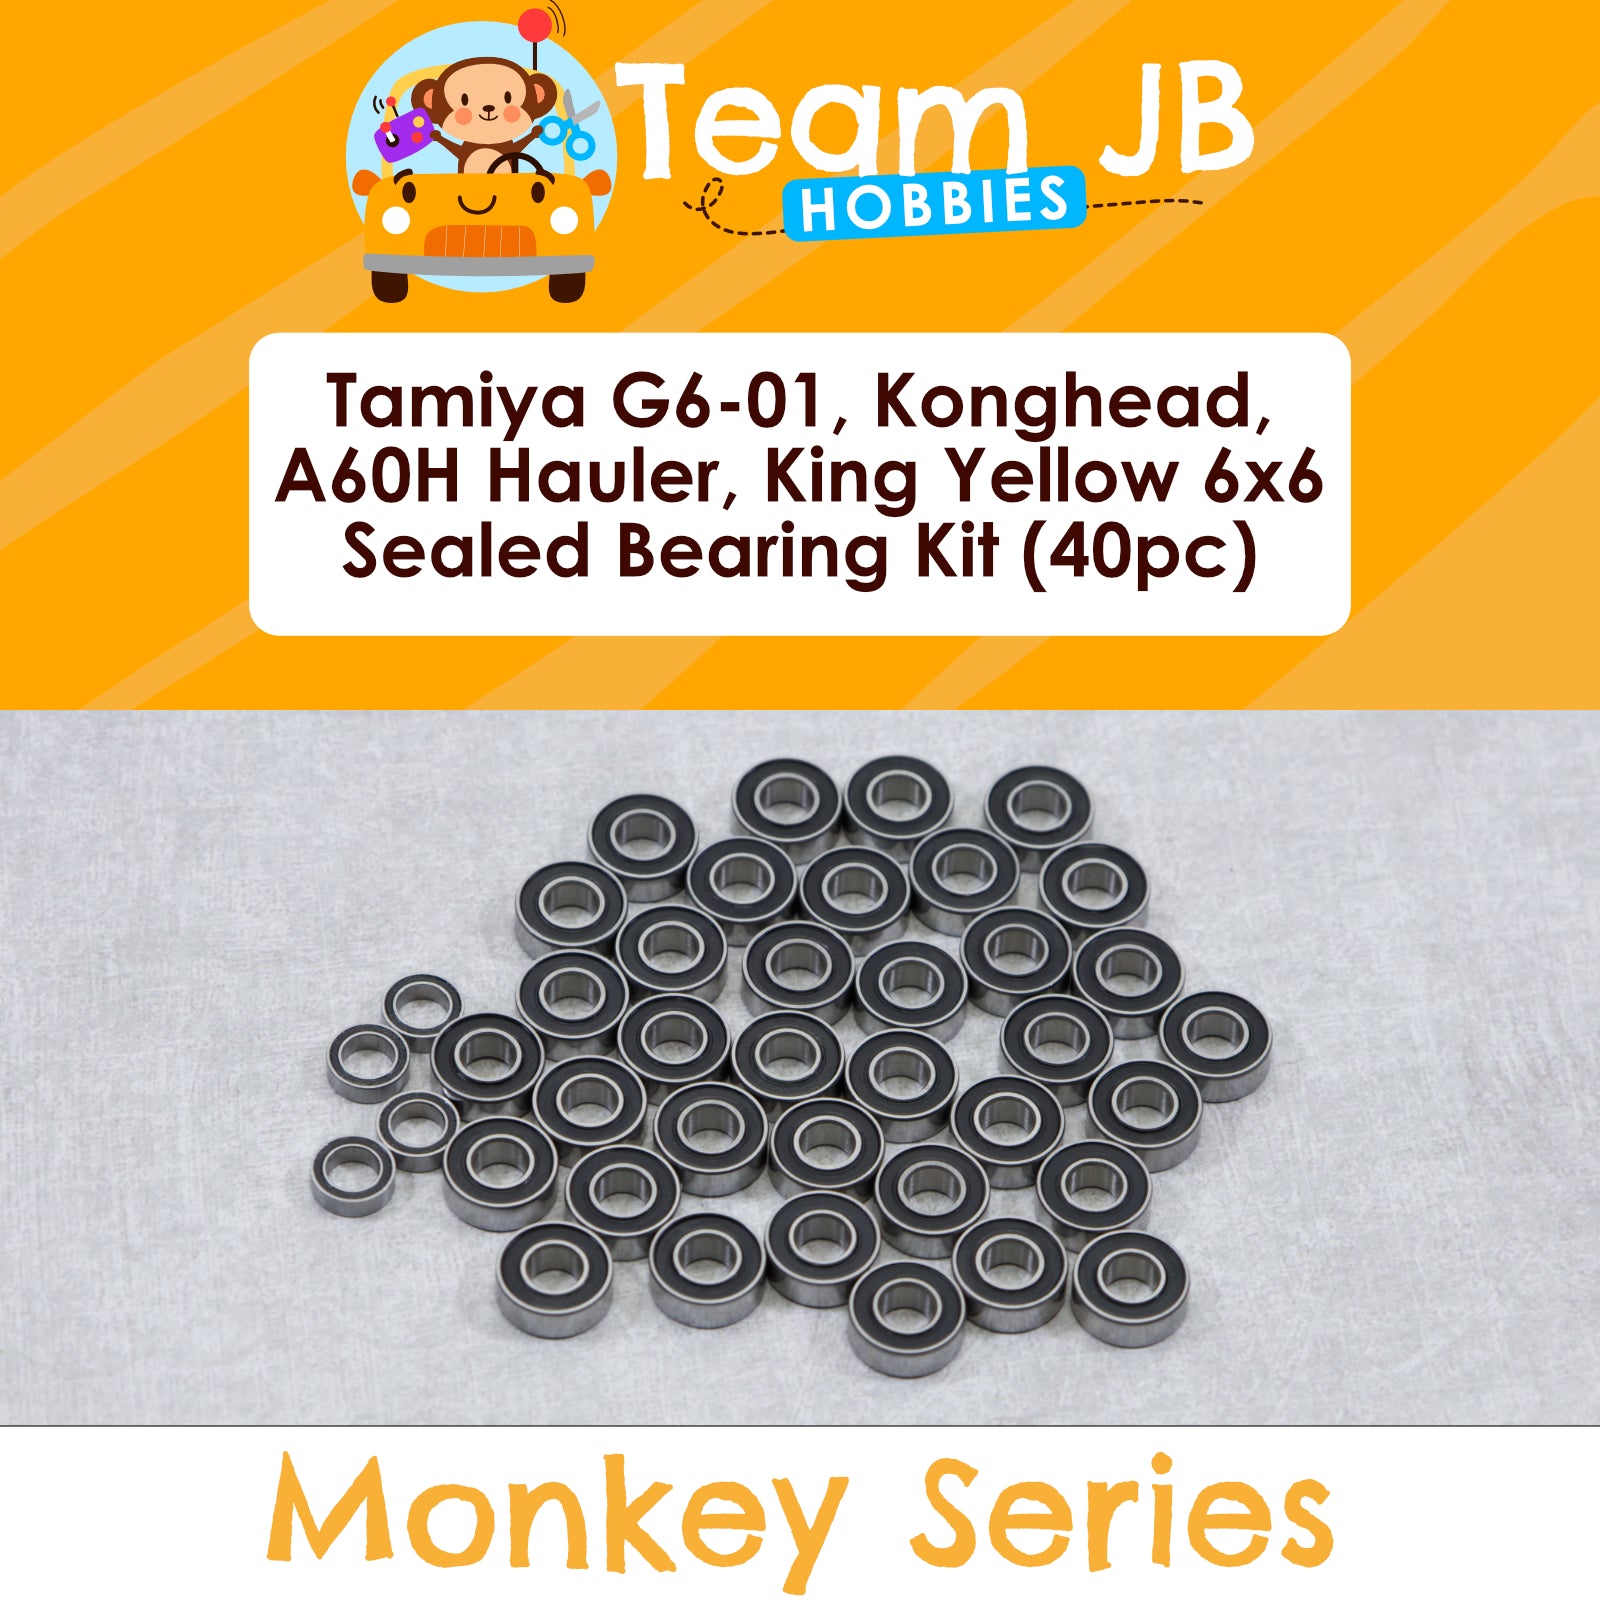 Bearing Kits - Tamiya